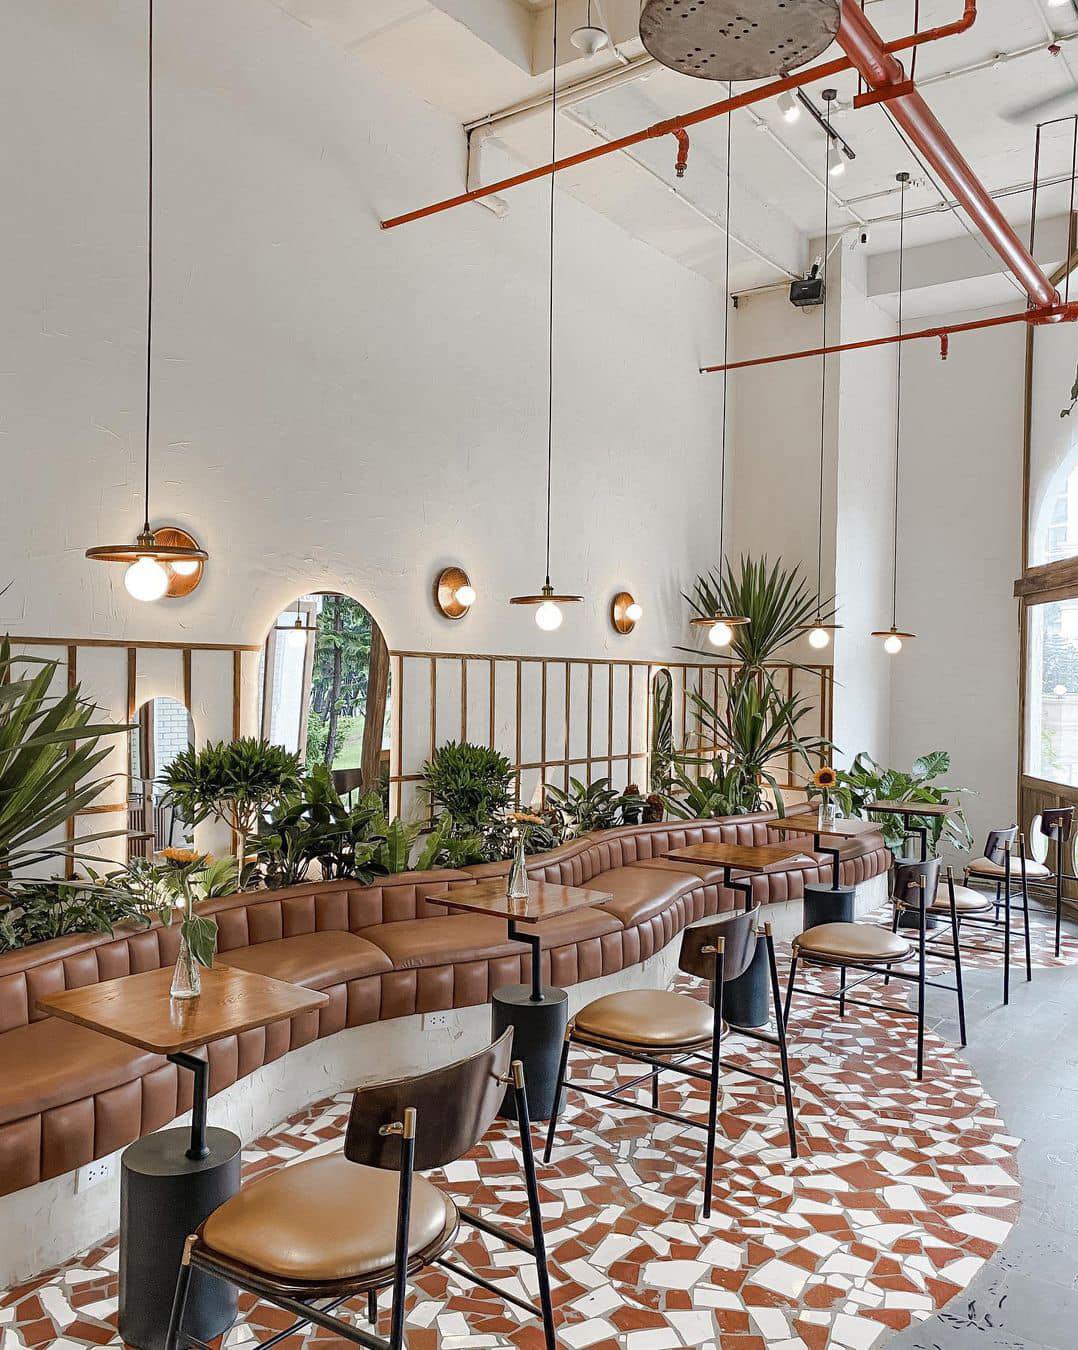 3. Mermon Coffee Royal City - Thiết kế hiện đại đậm chất "minimalism"